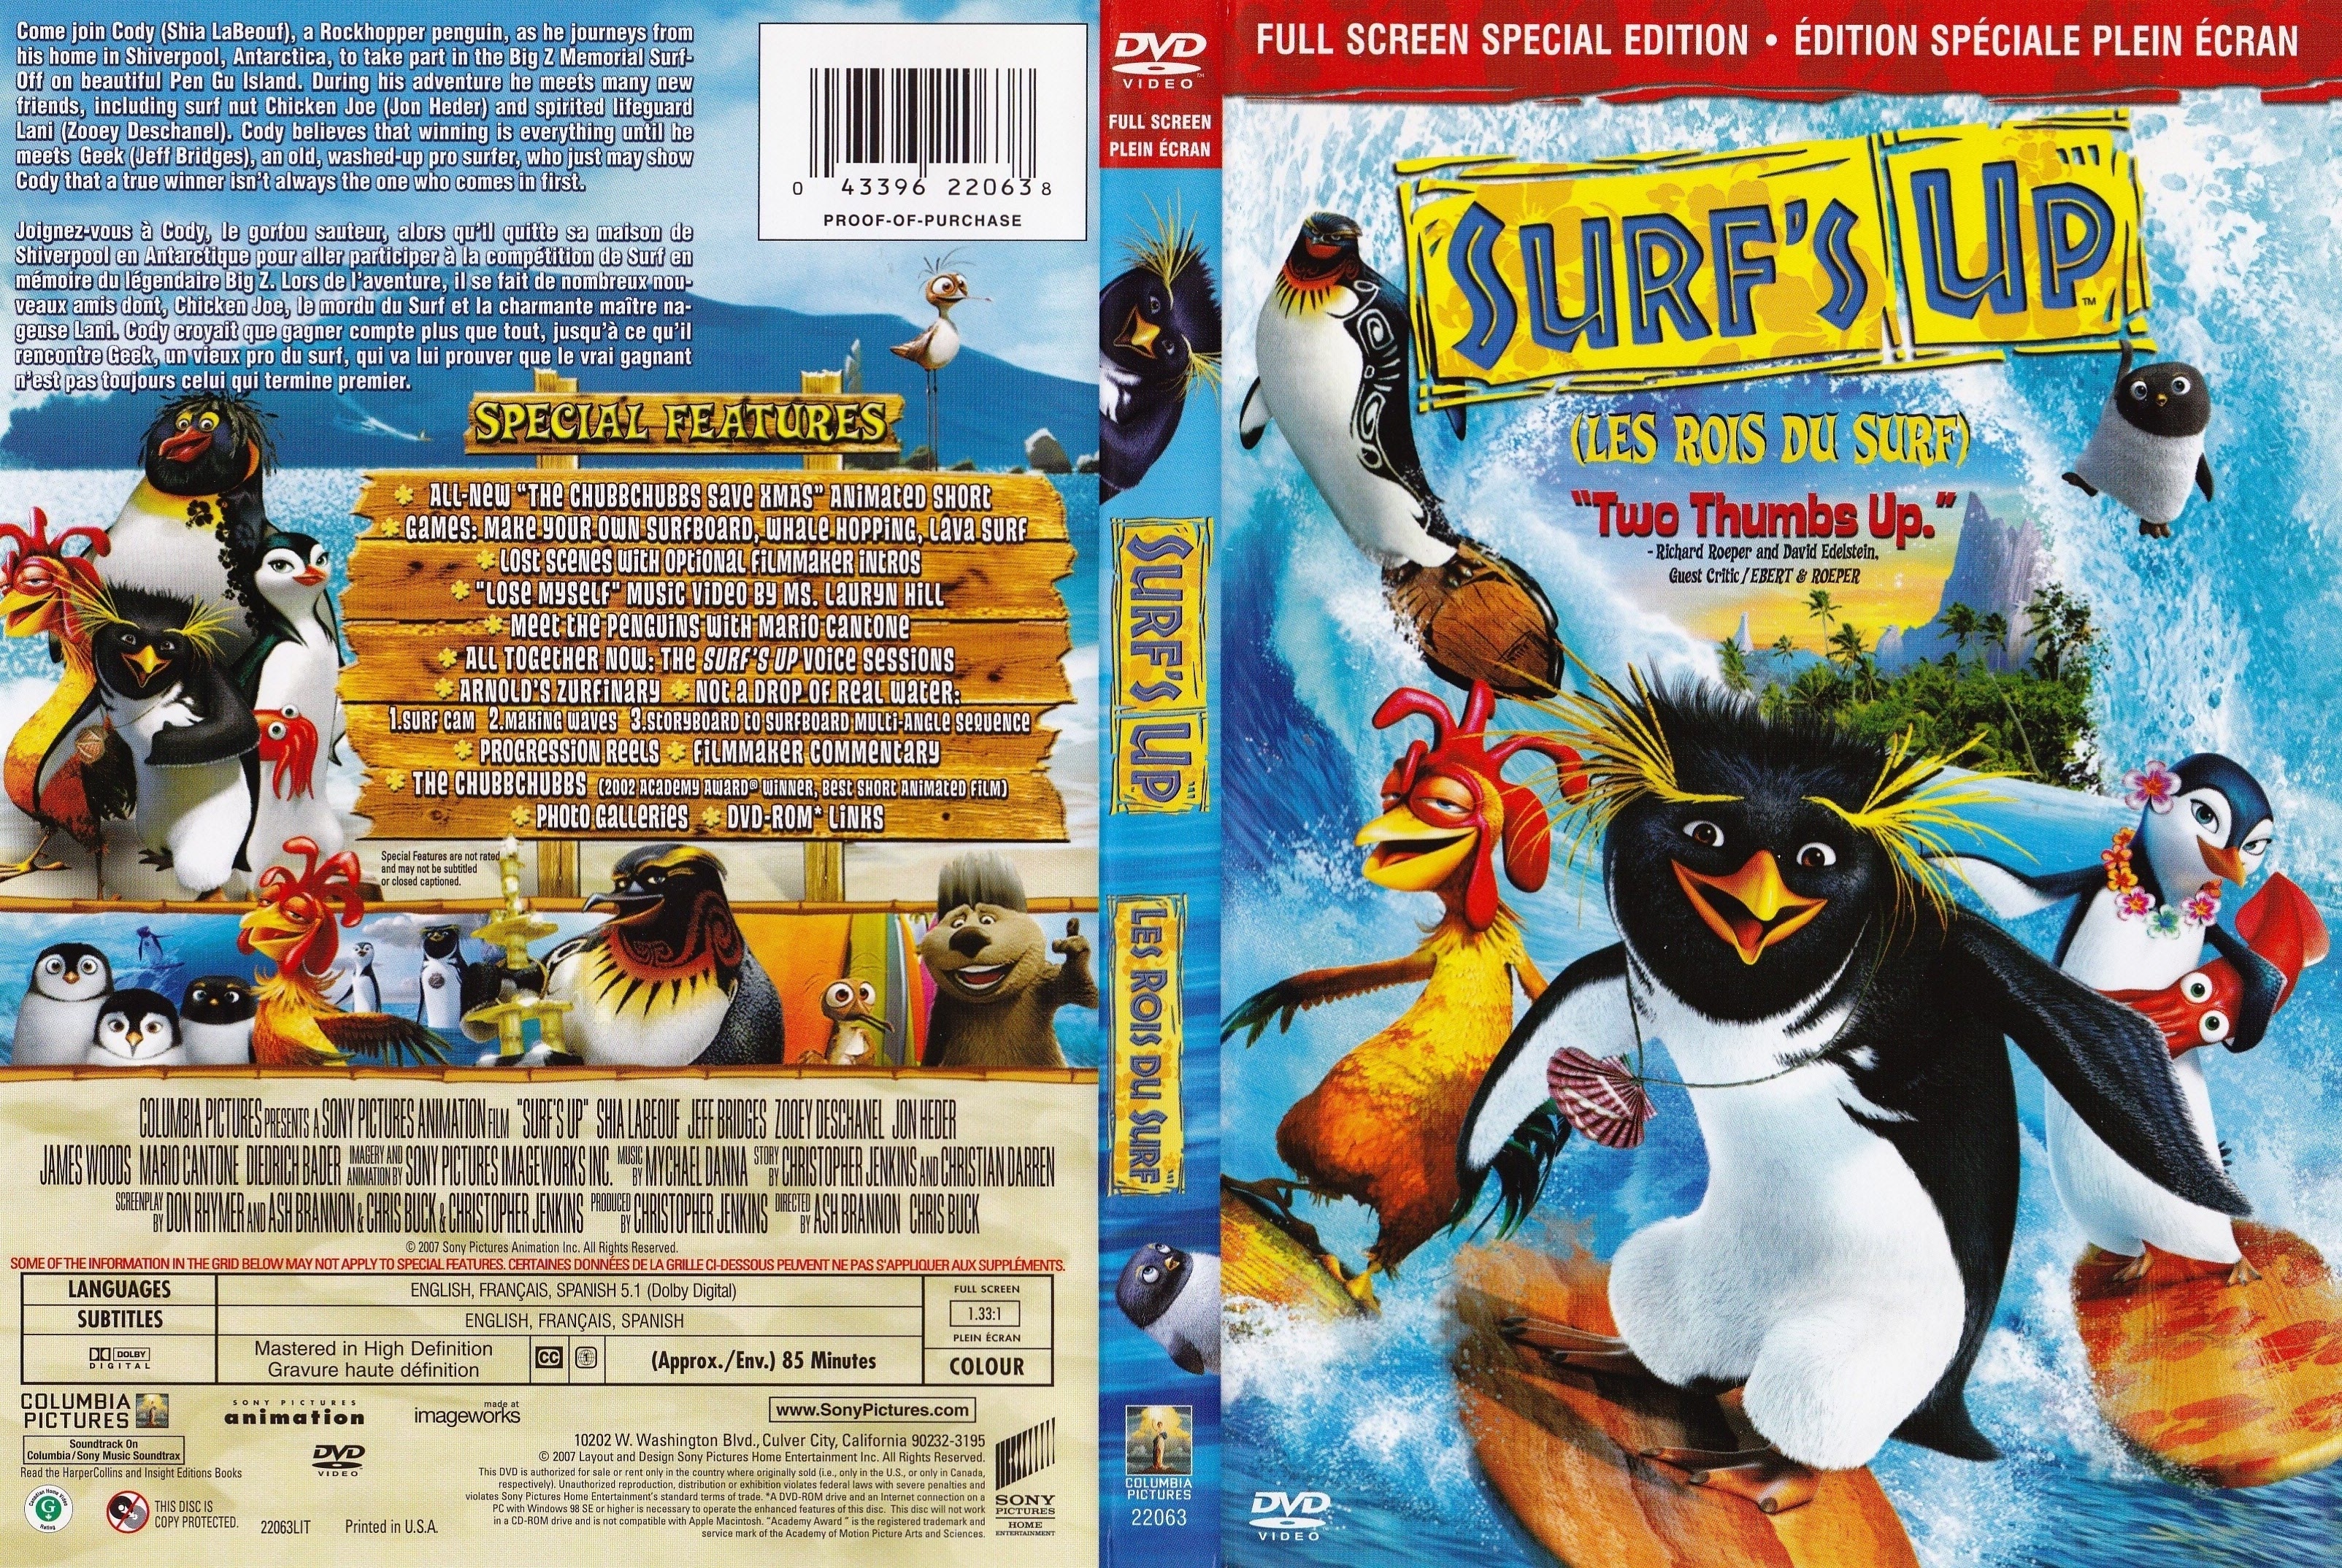 Jaquette DVD Les rois du surf - Surf